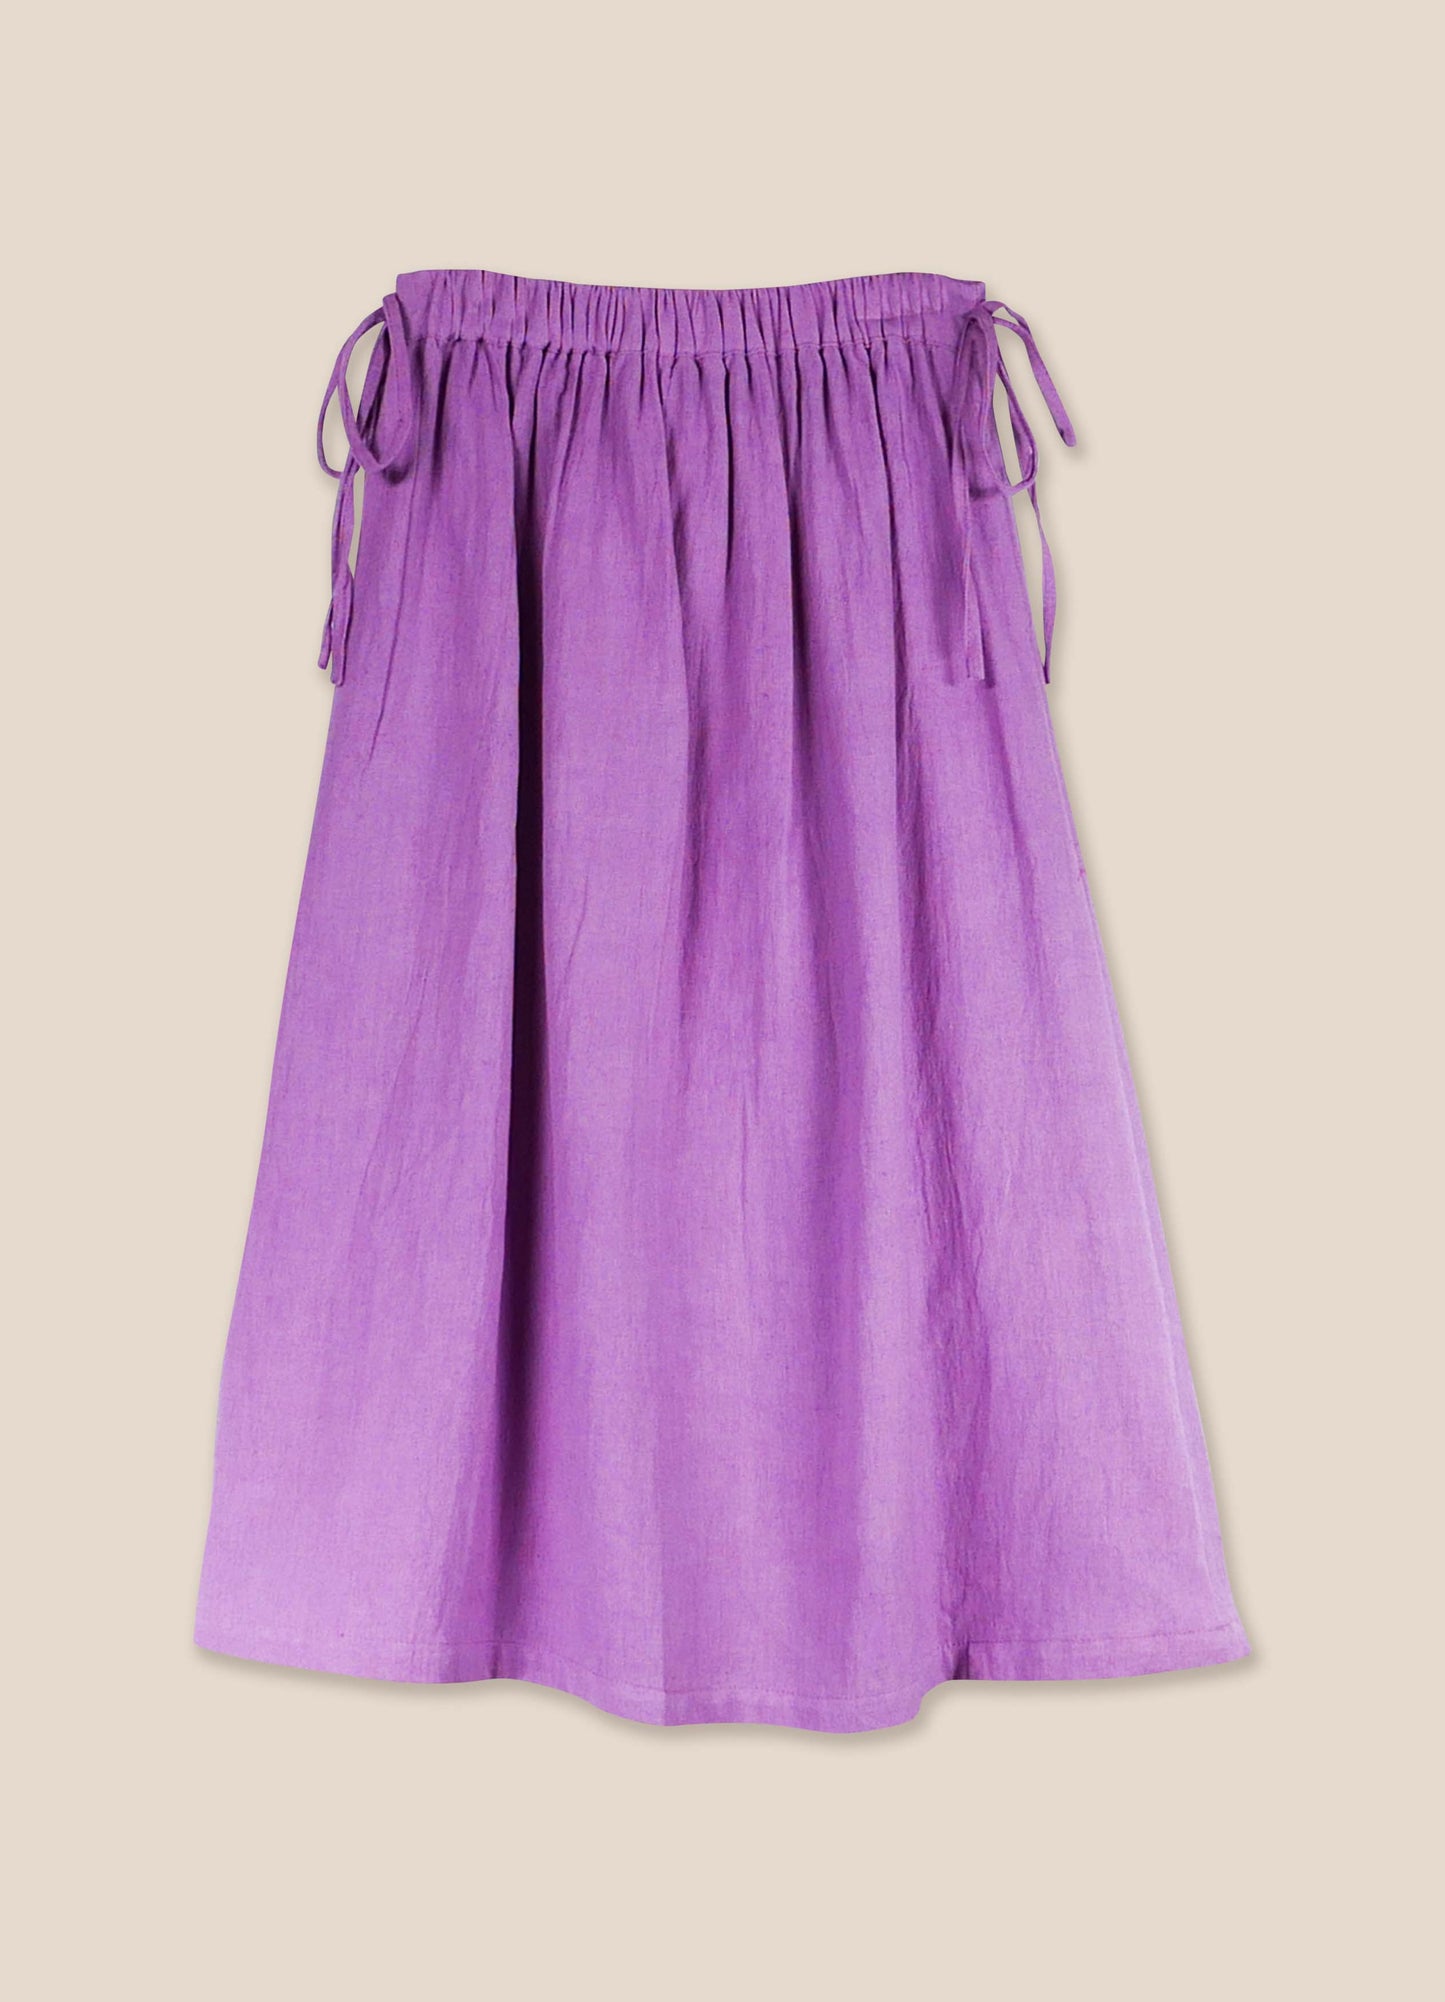 Skirt No. 24 African Violet